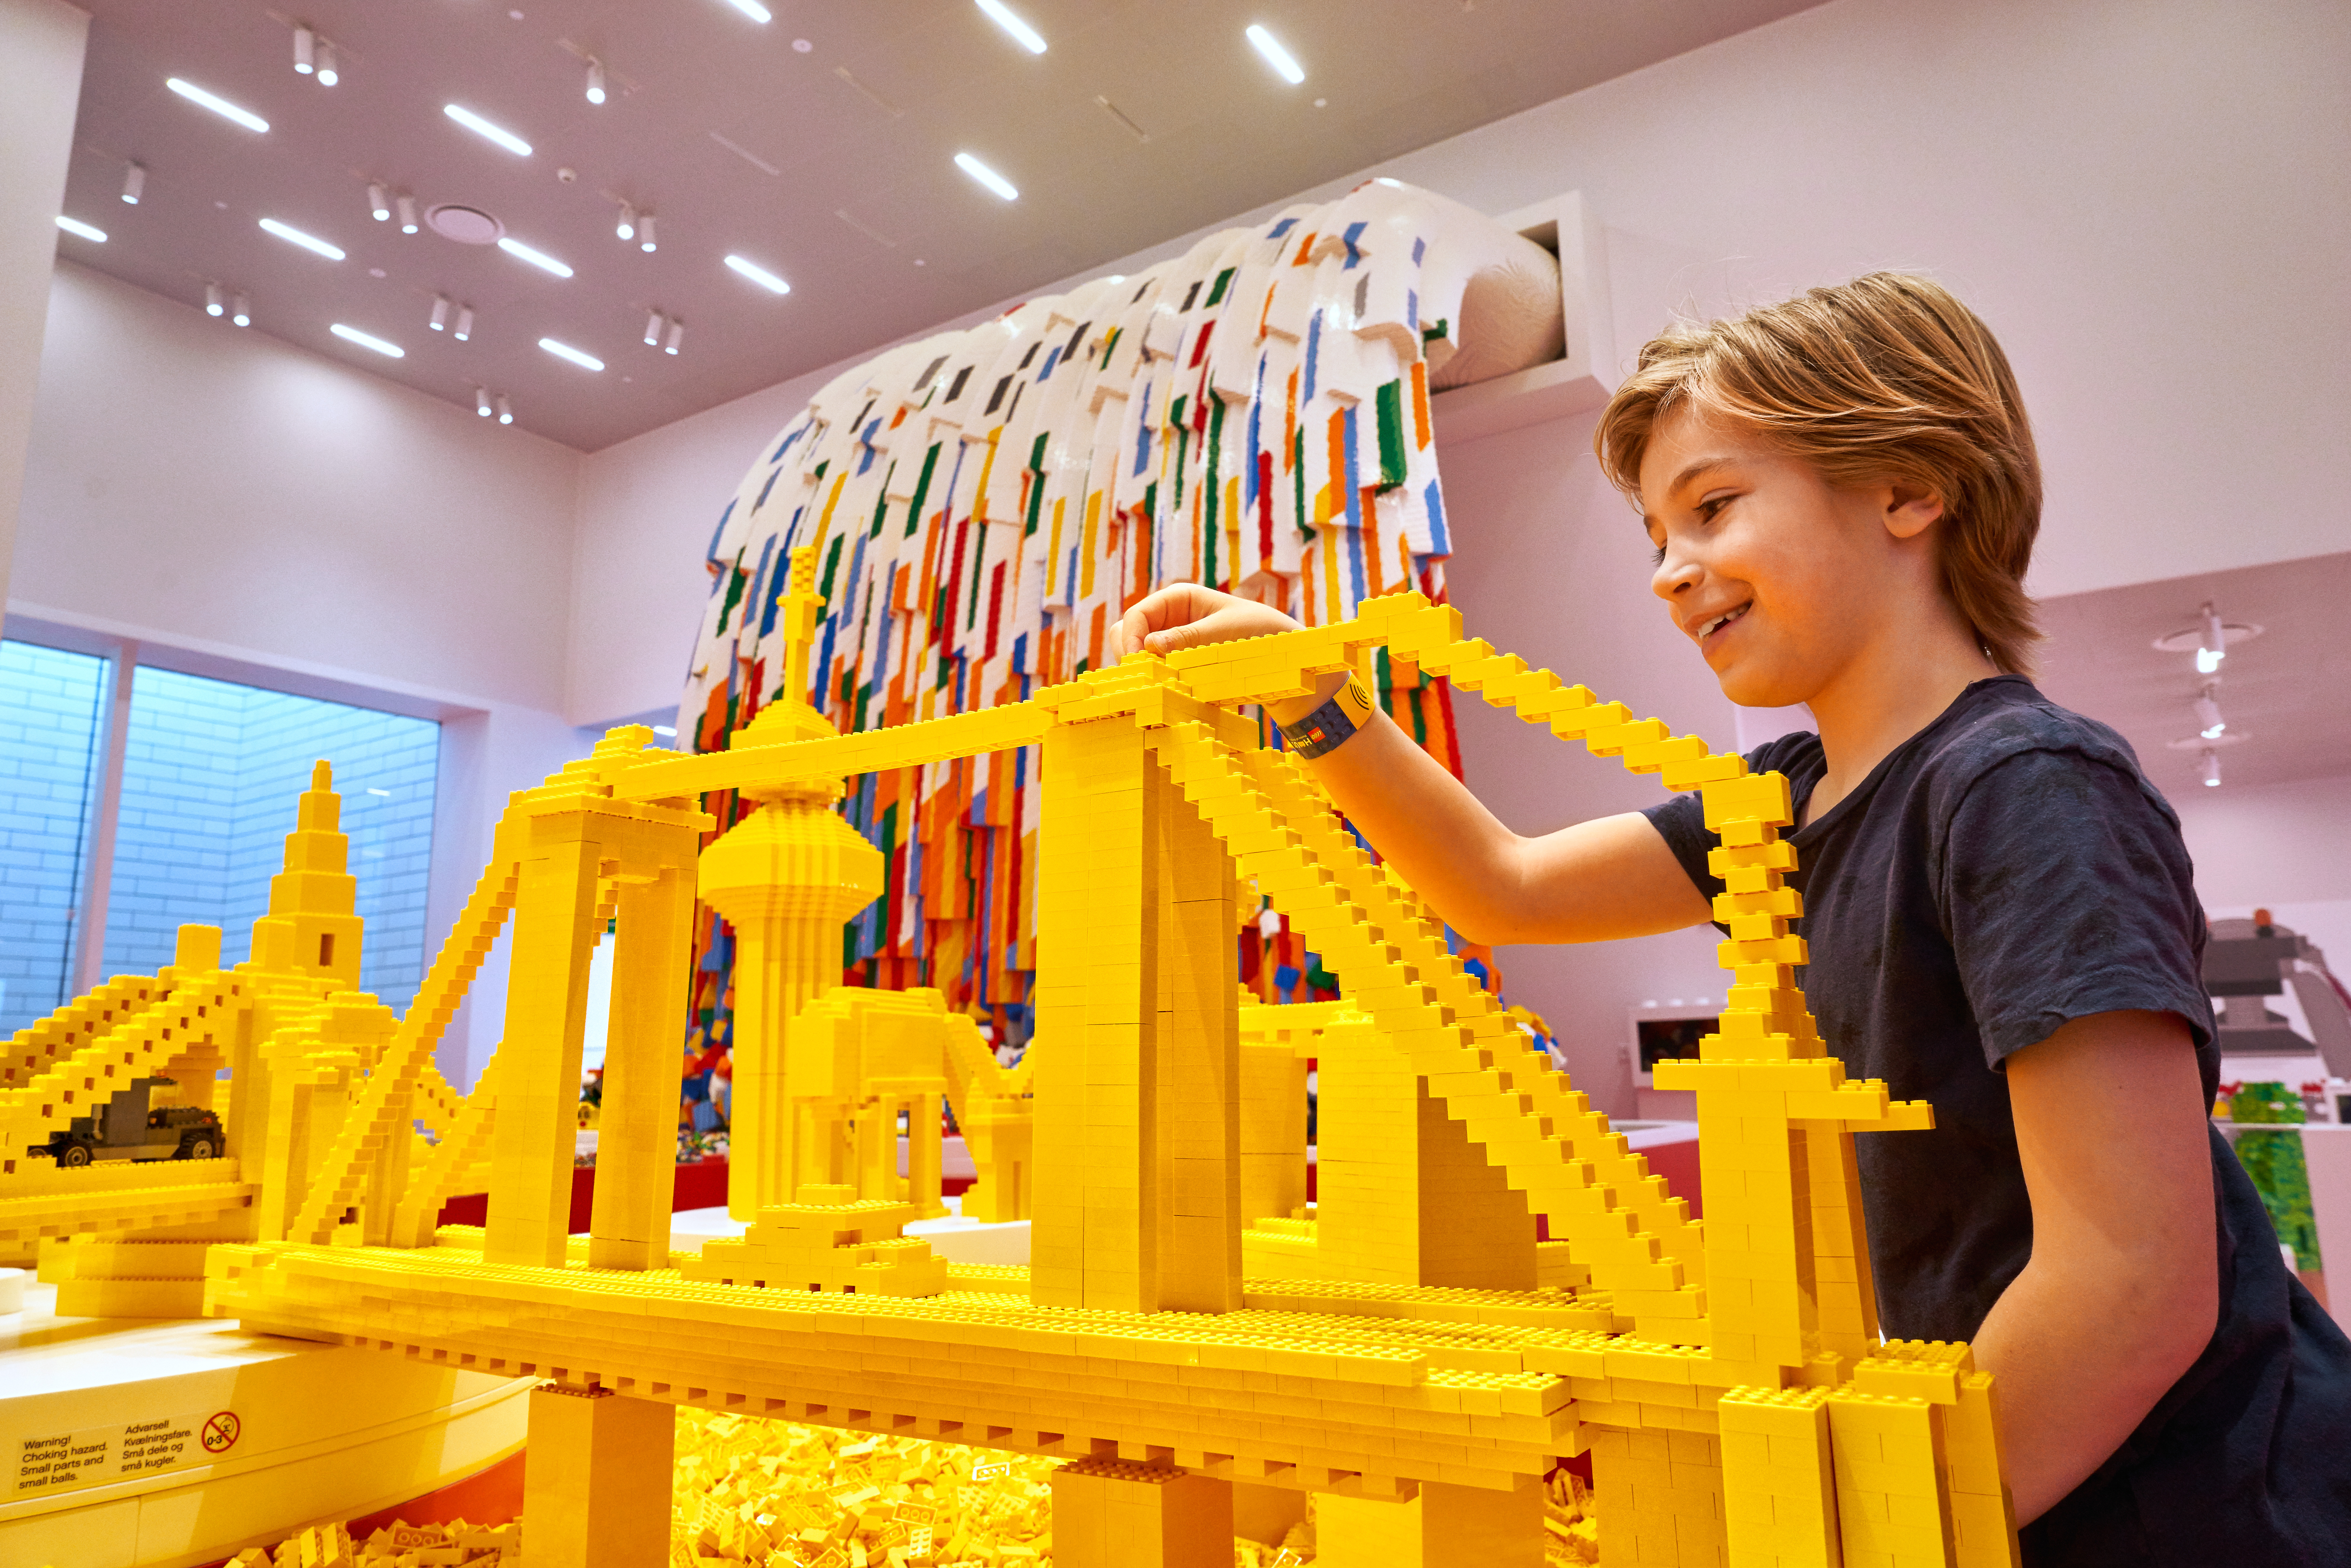 Lego hat seine umweltfreundlichen Bemühungen, Plastik in seinen Bausteinen zu ersetzen, aufgegeben